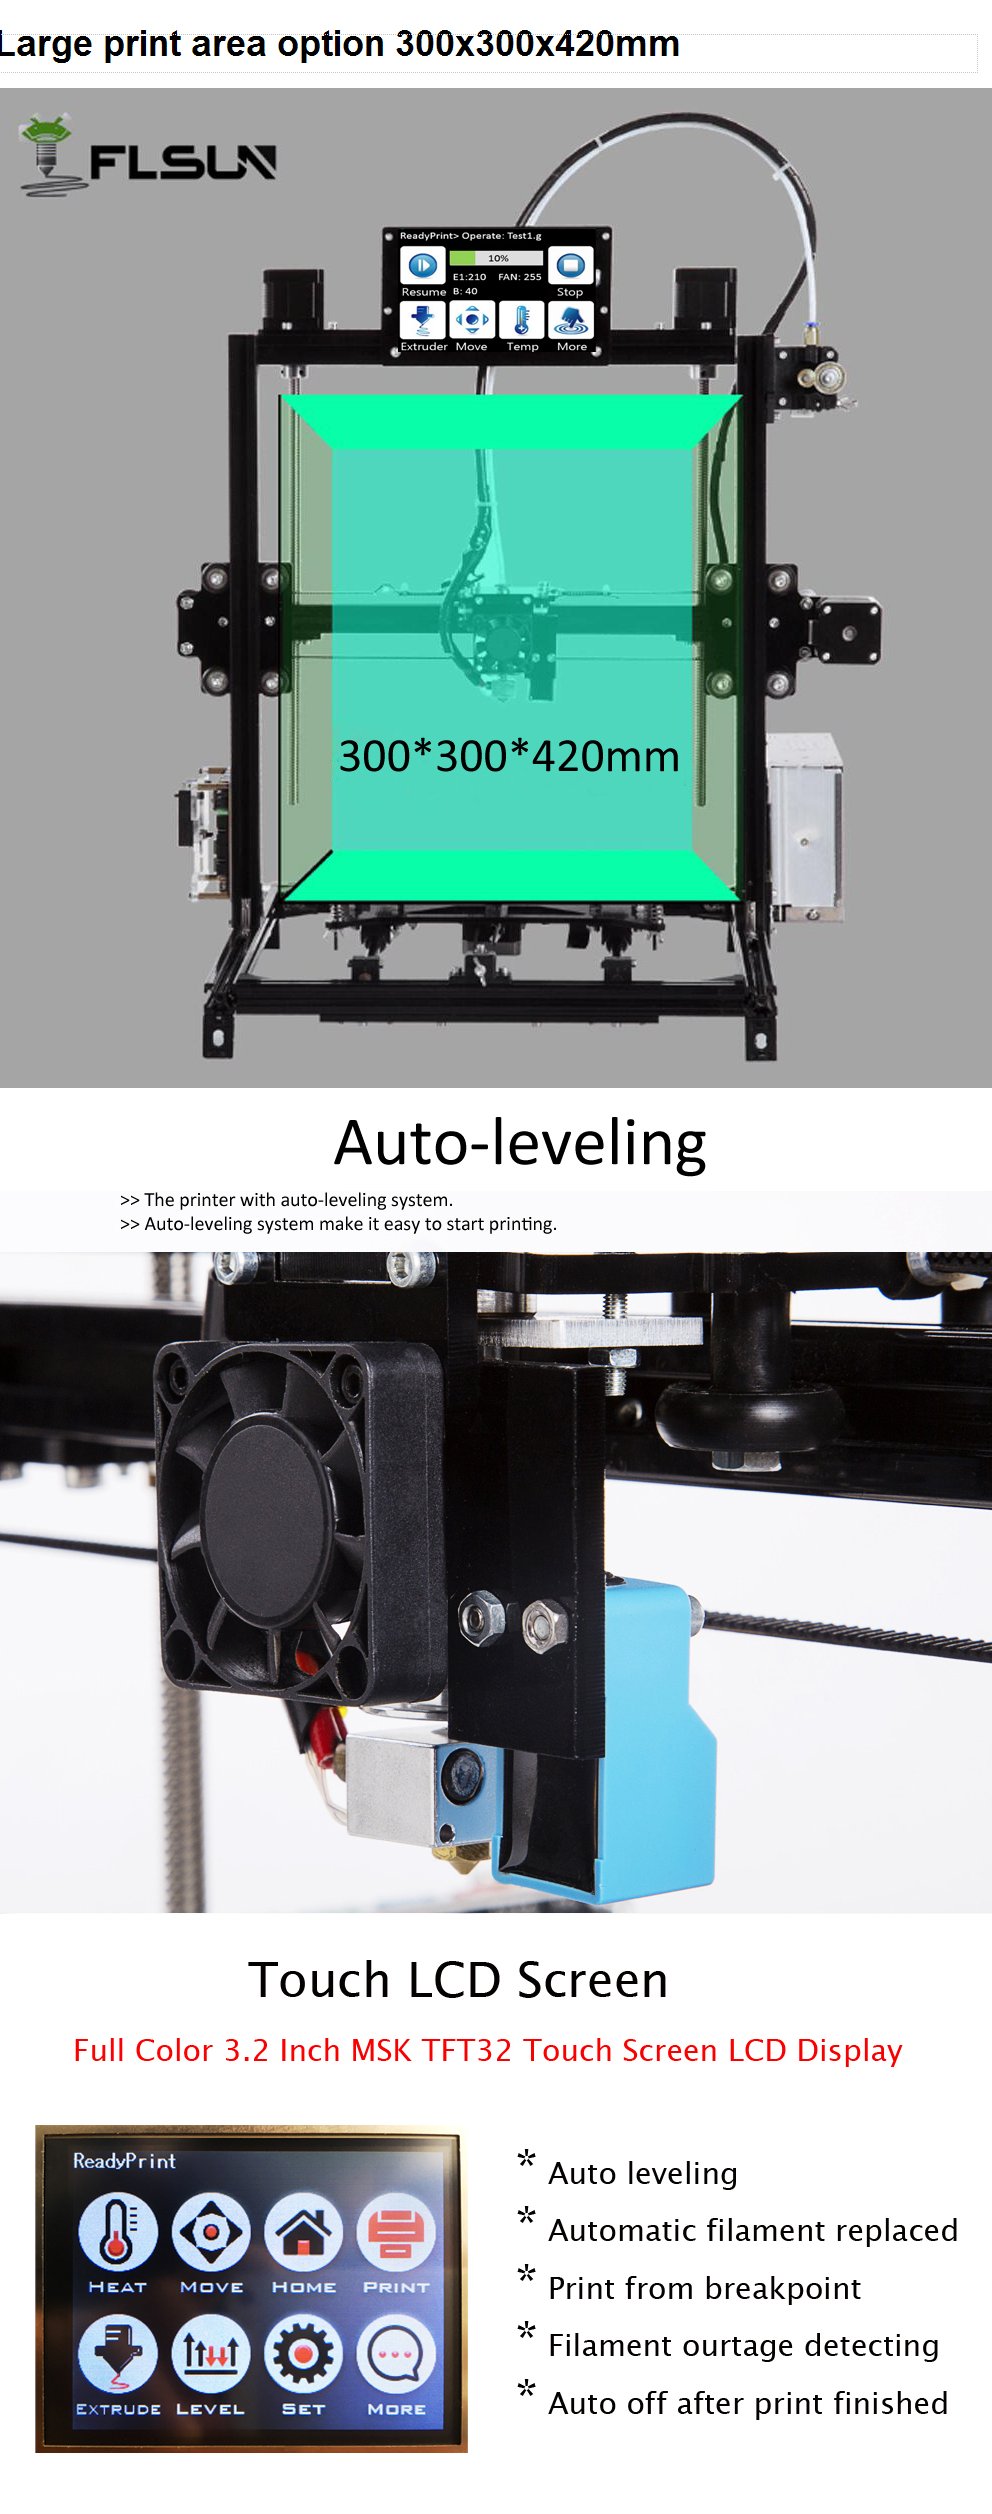 FLSUN® C Plus Desktop DIY 3D Printer With Touch Screen Dual Nozzle Auto Leveling Double Z-motors Support Flexible Filament 300*300*420mm Printing Size 2